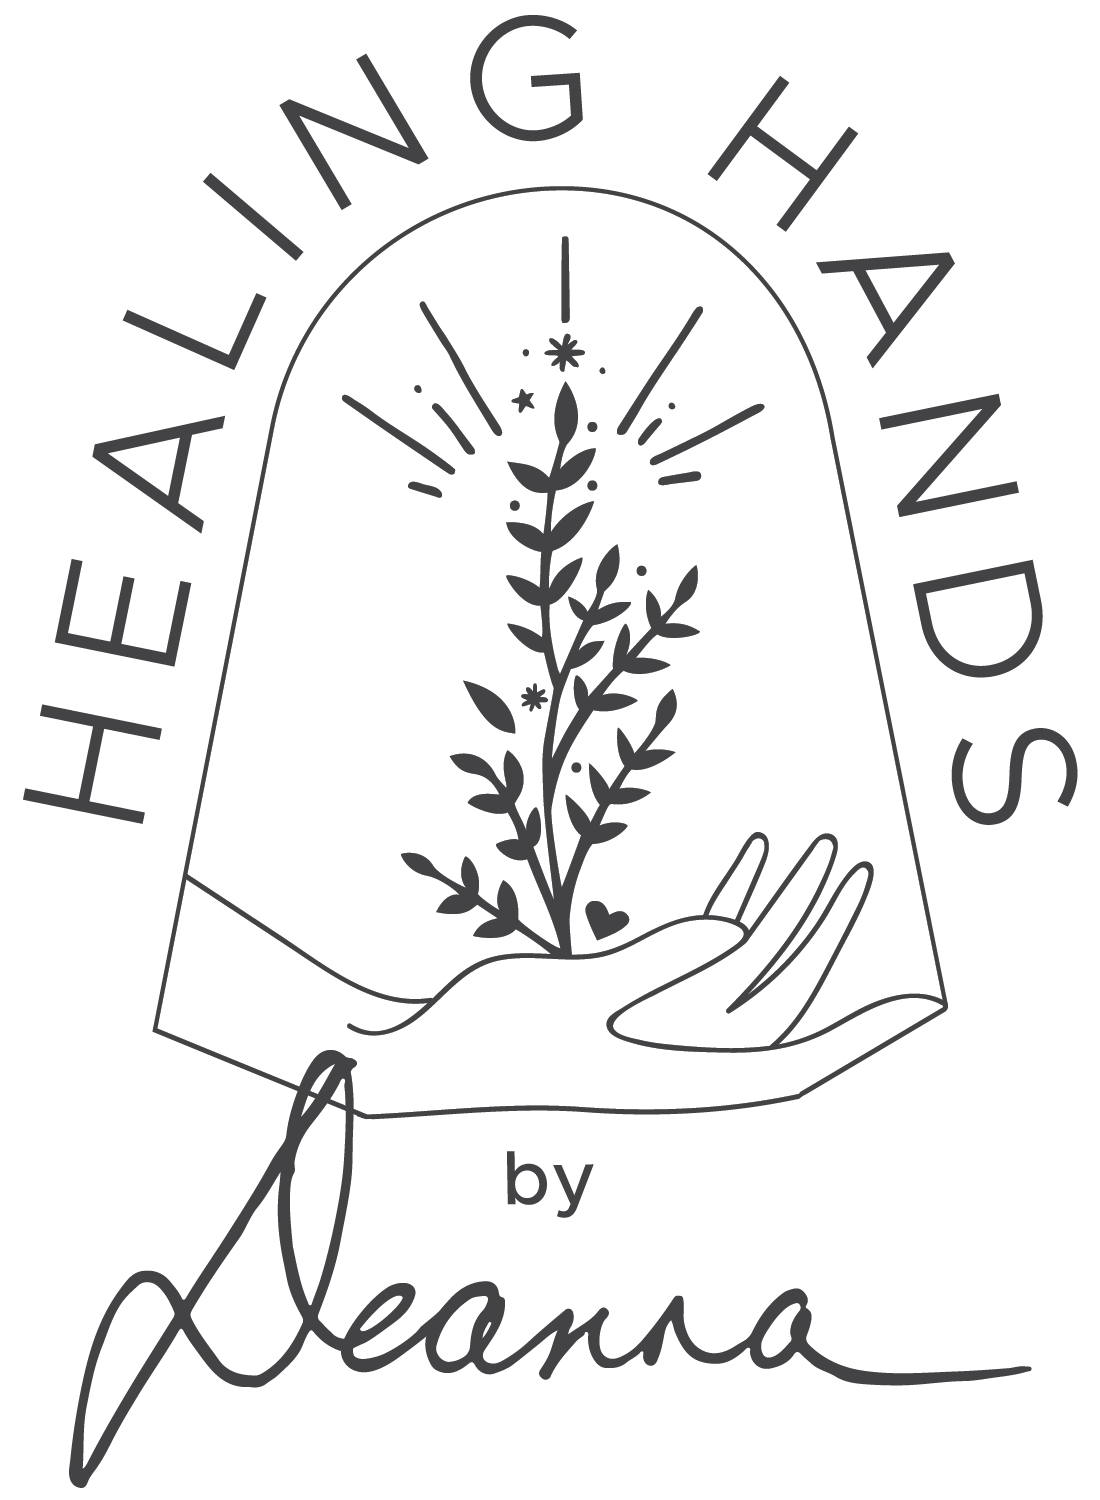 Healing Hands by Deanna